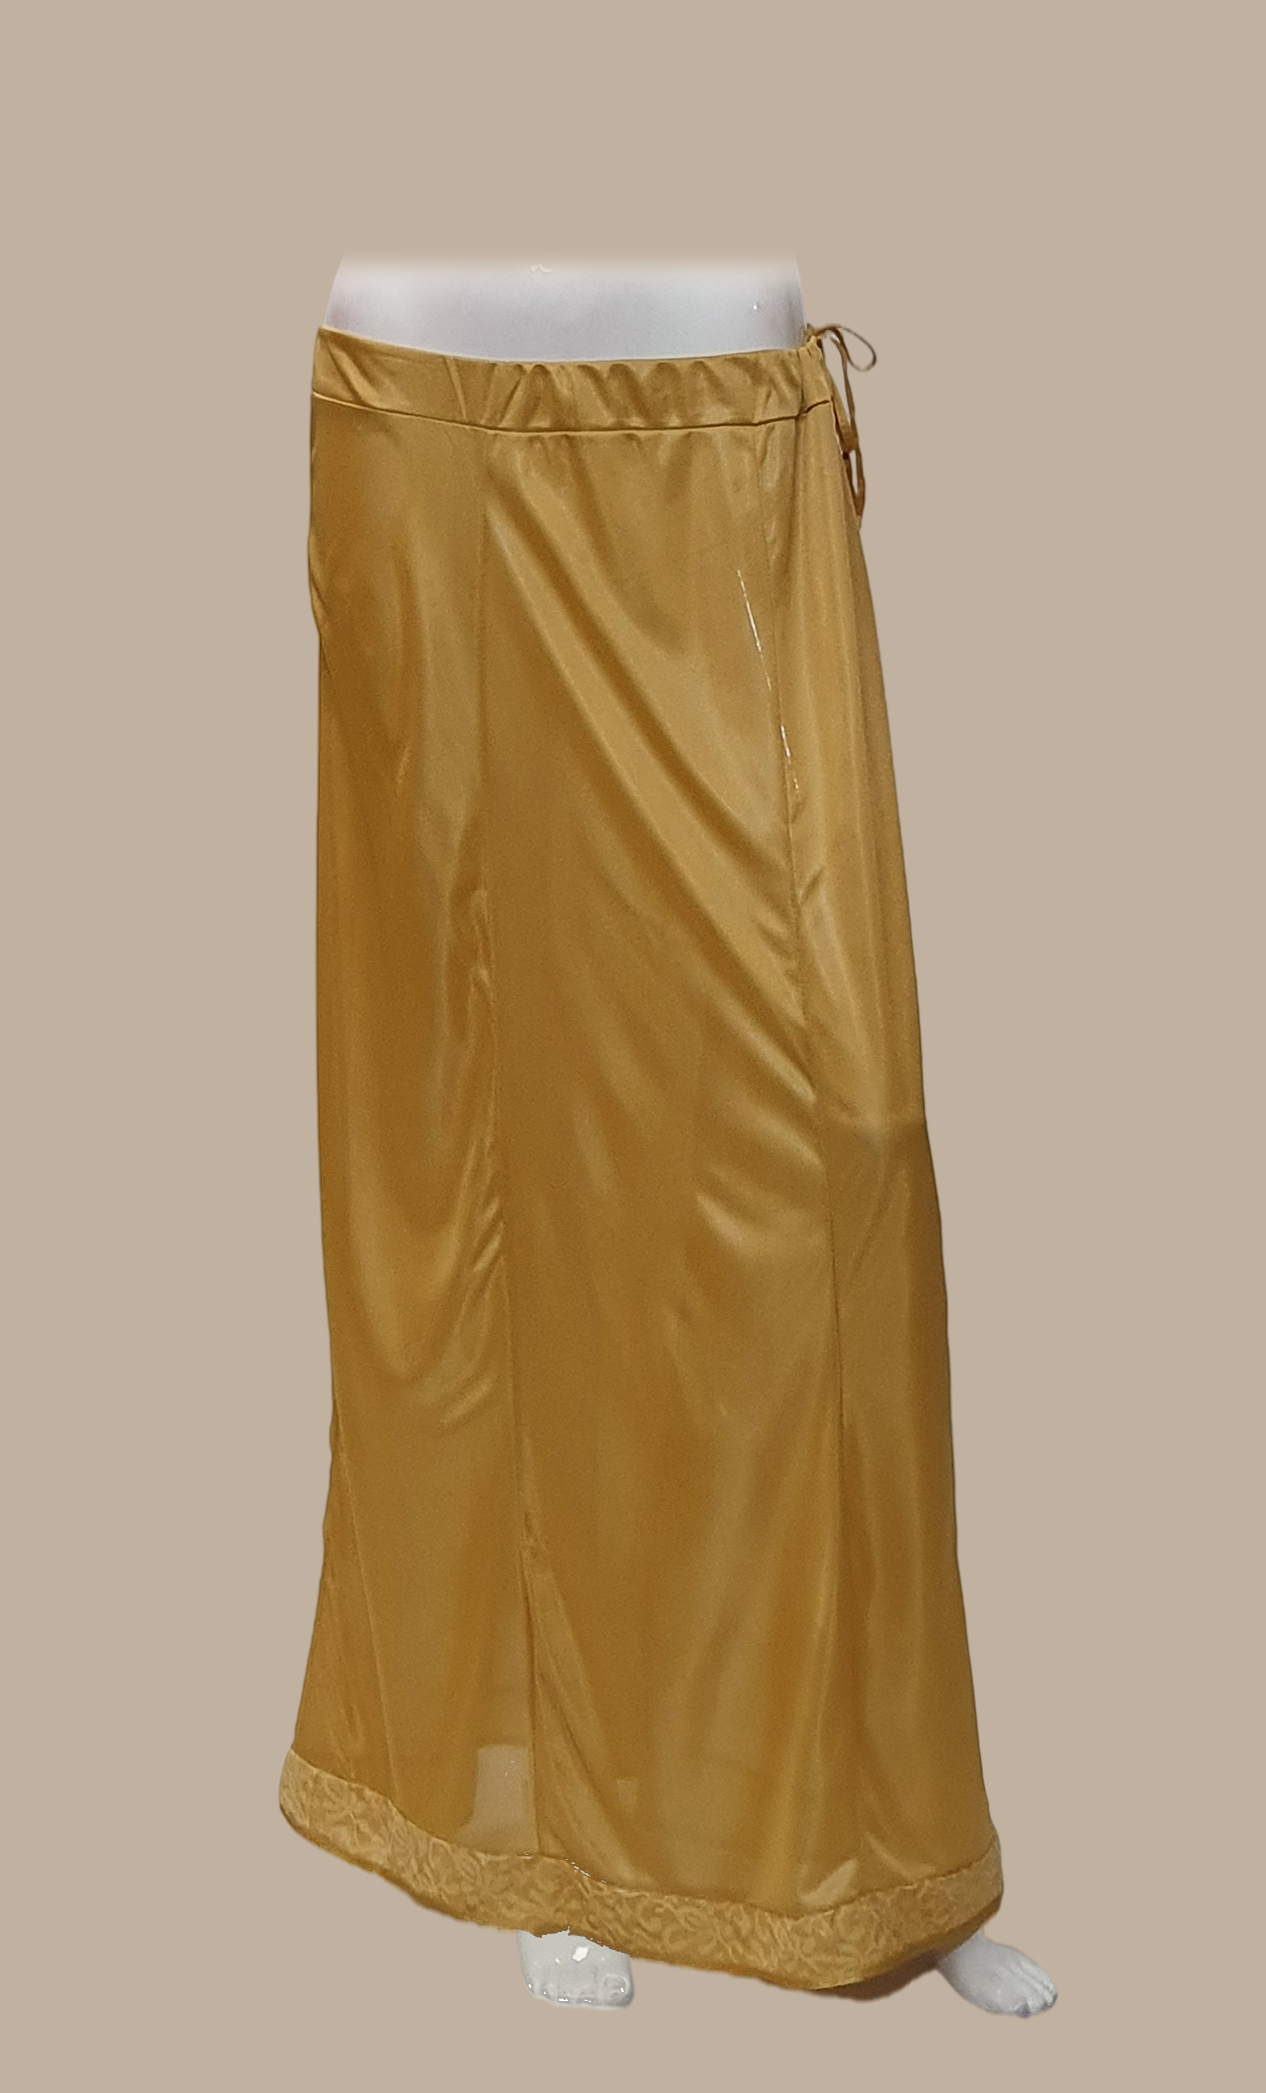 Gold Satin Under Skirt